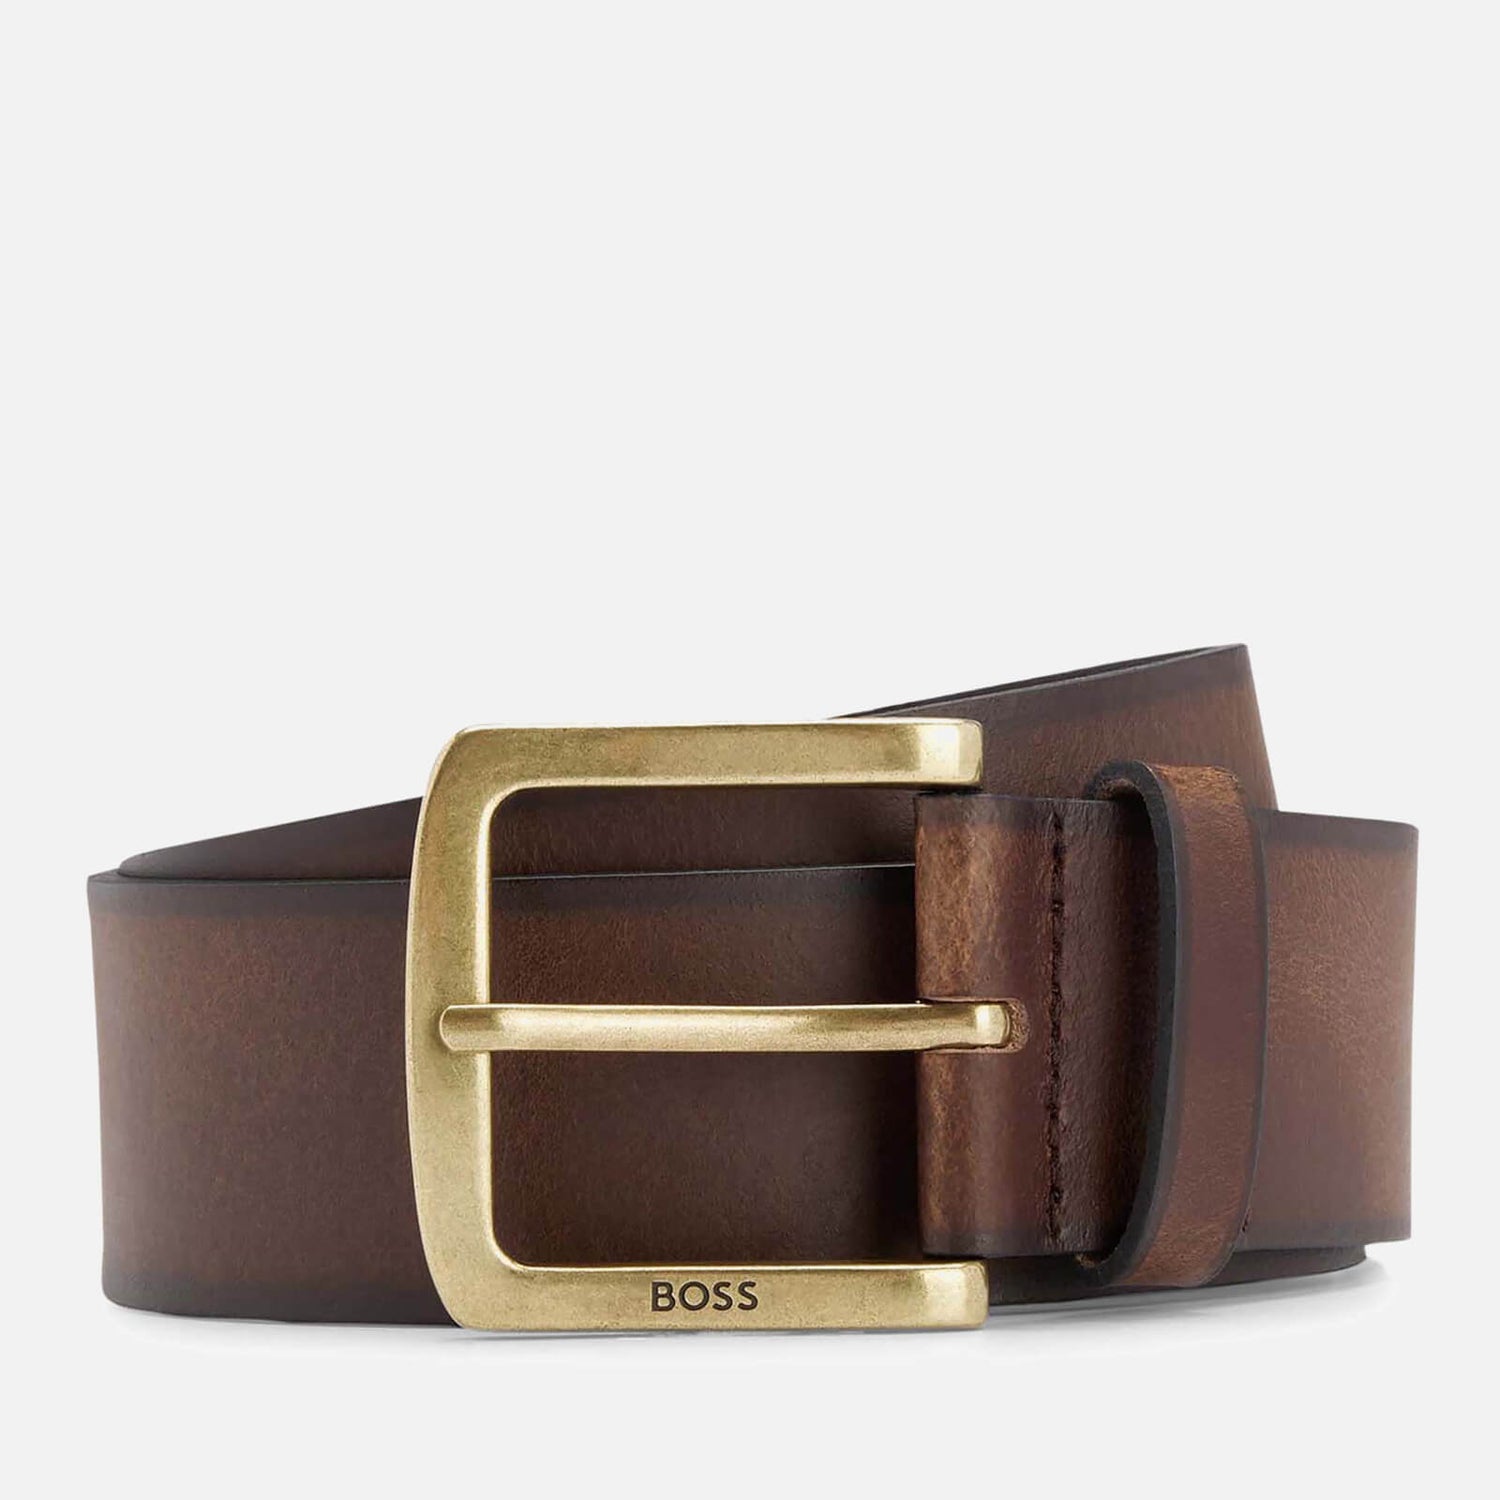 BOSS Joy Leather Belt